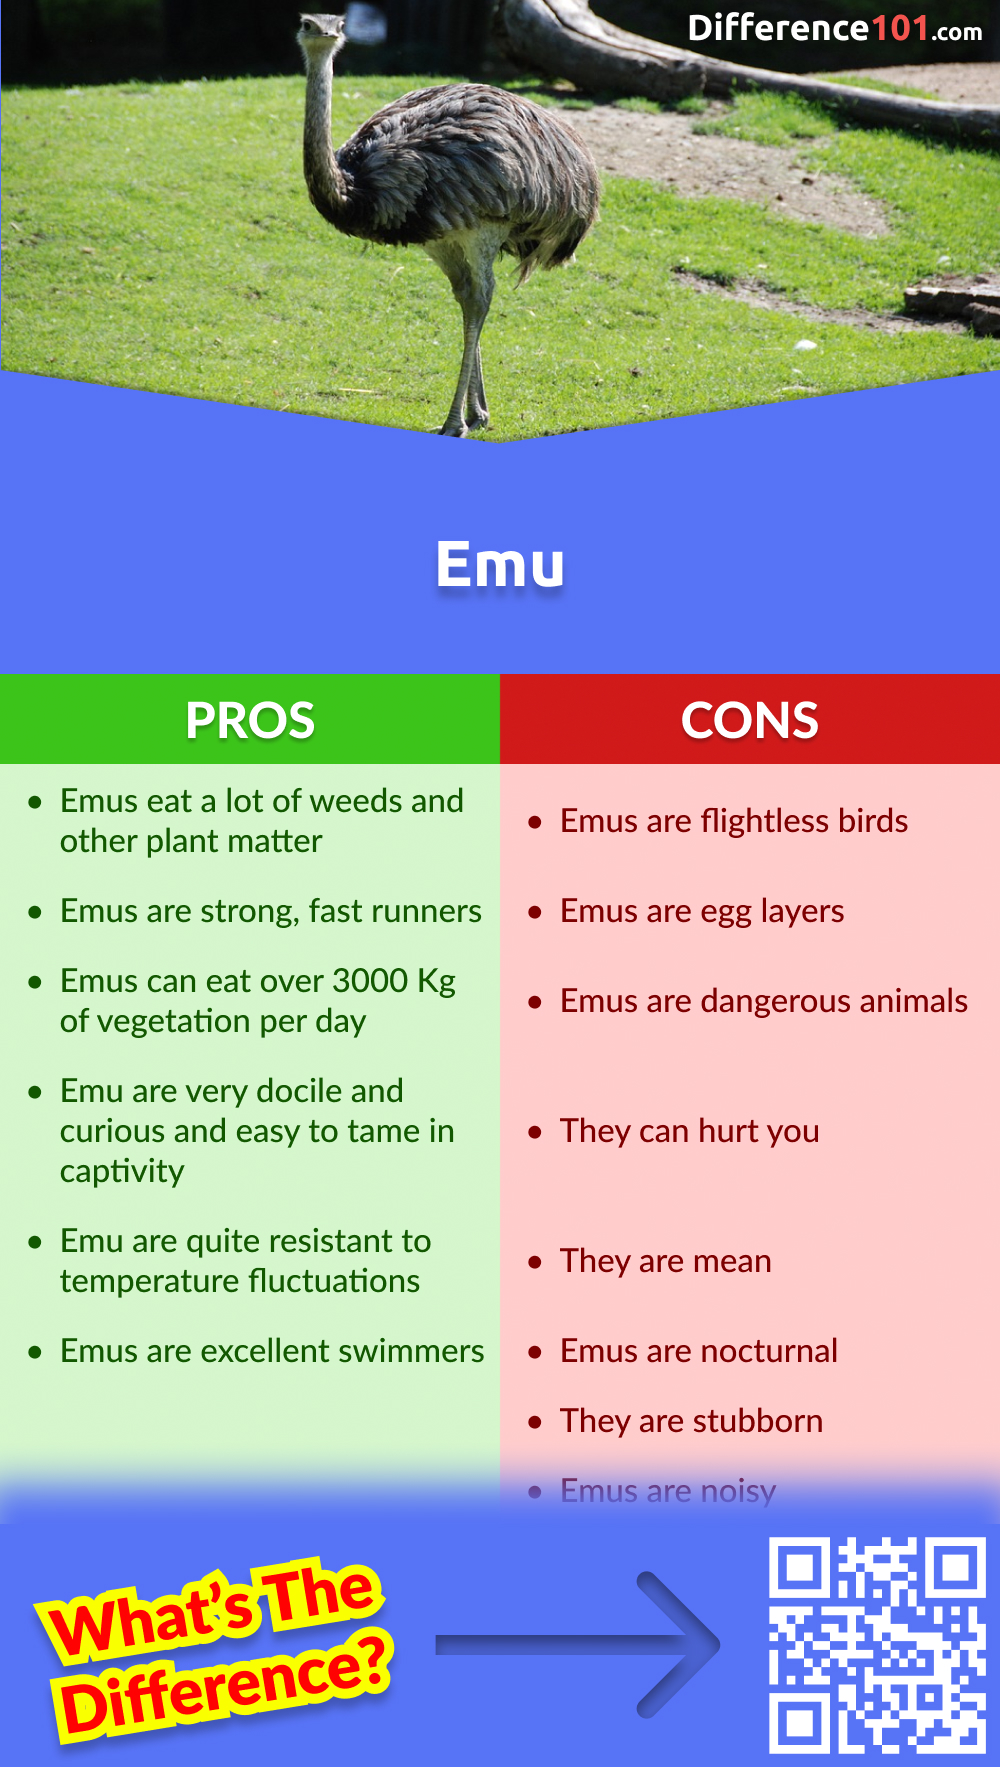 Emu Pros & Cons